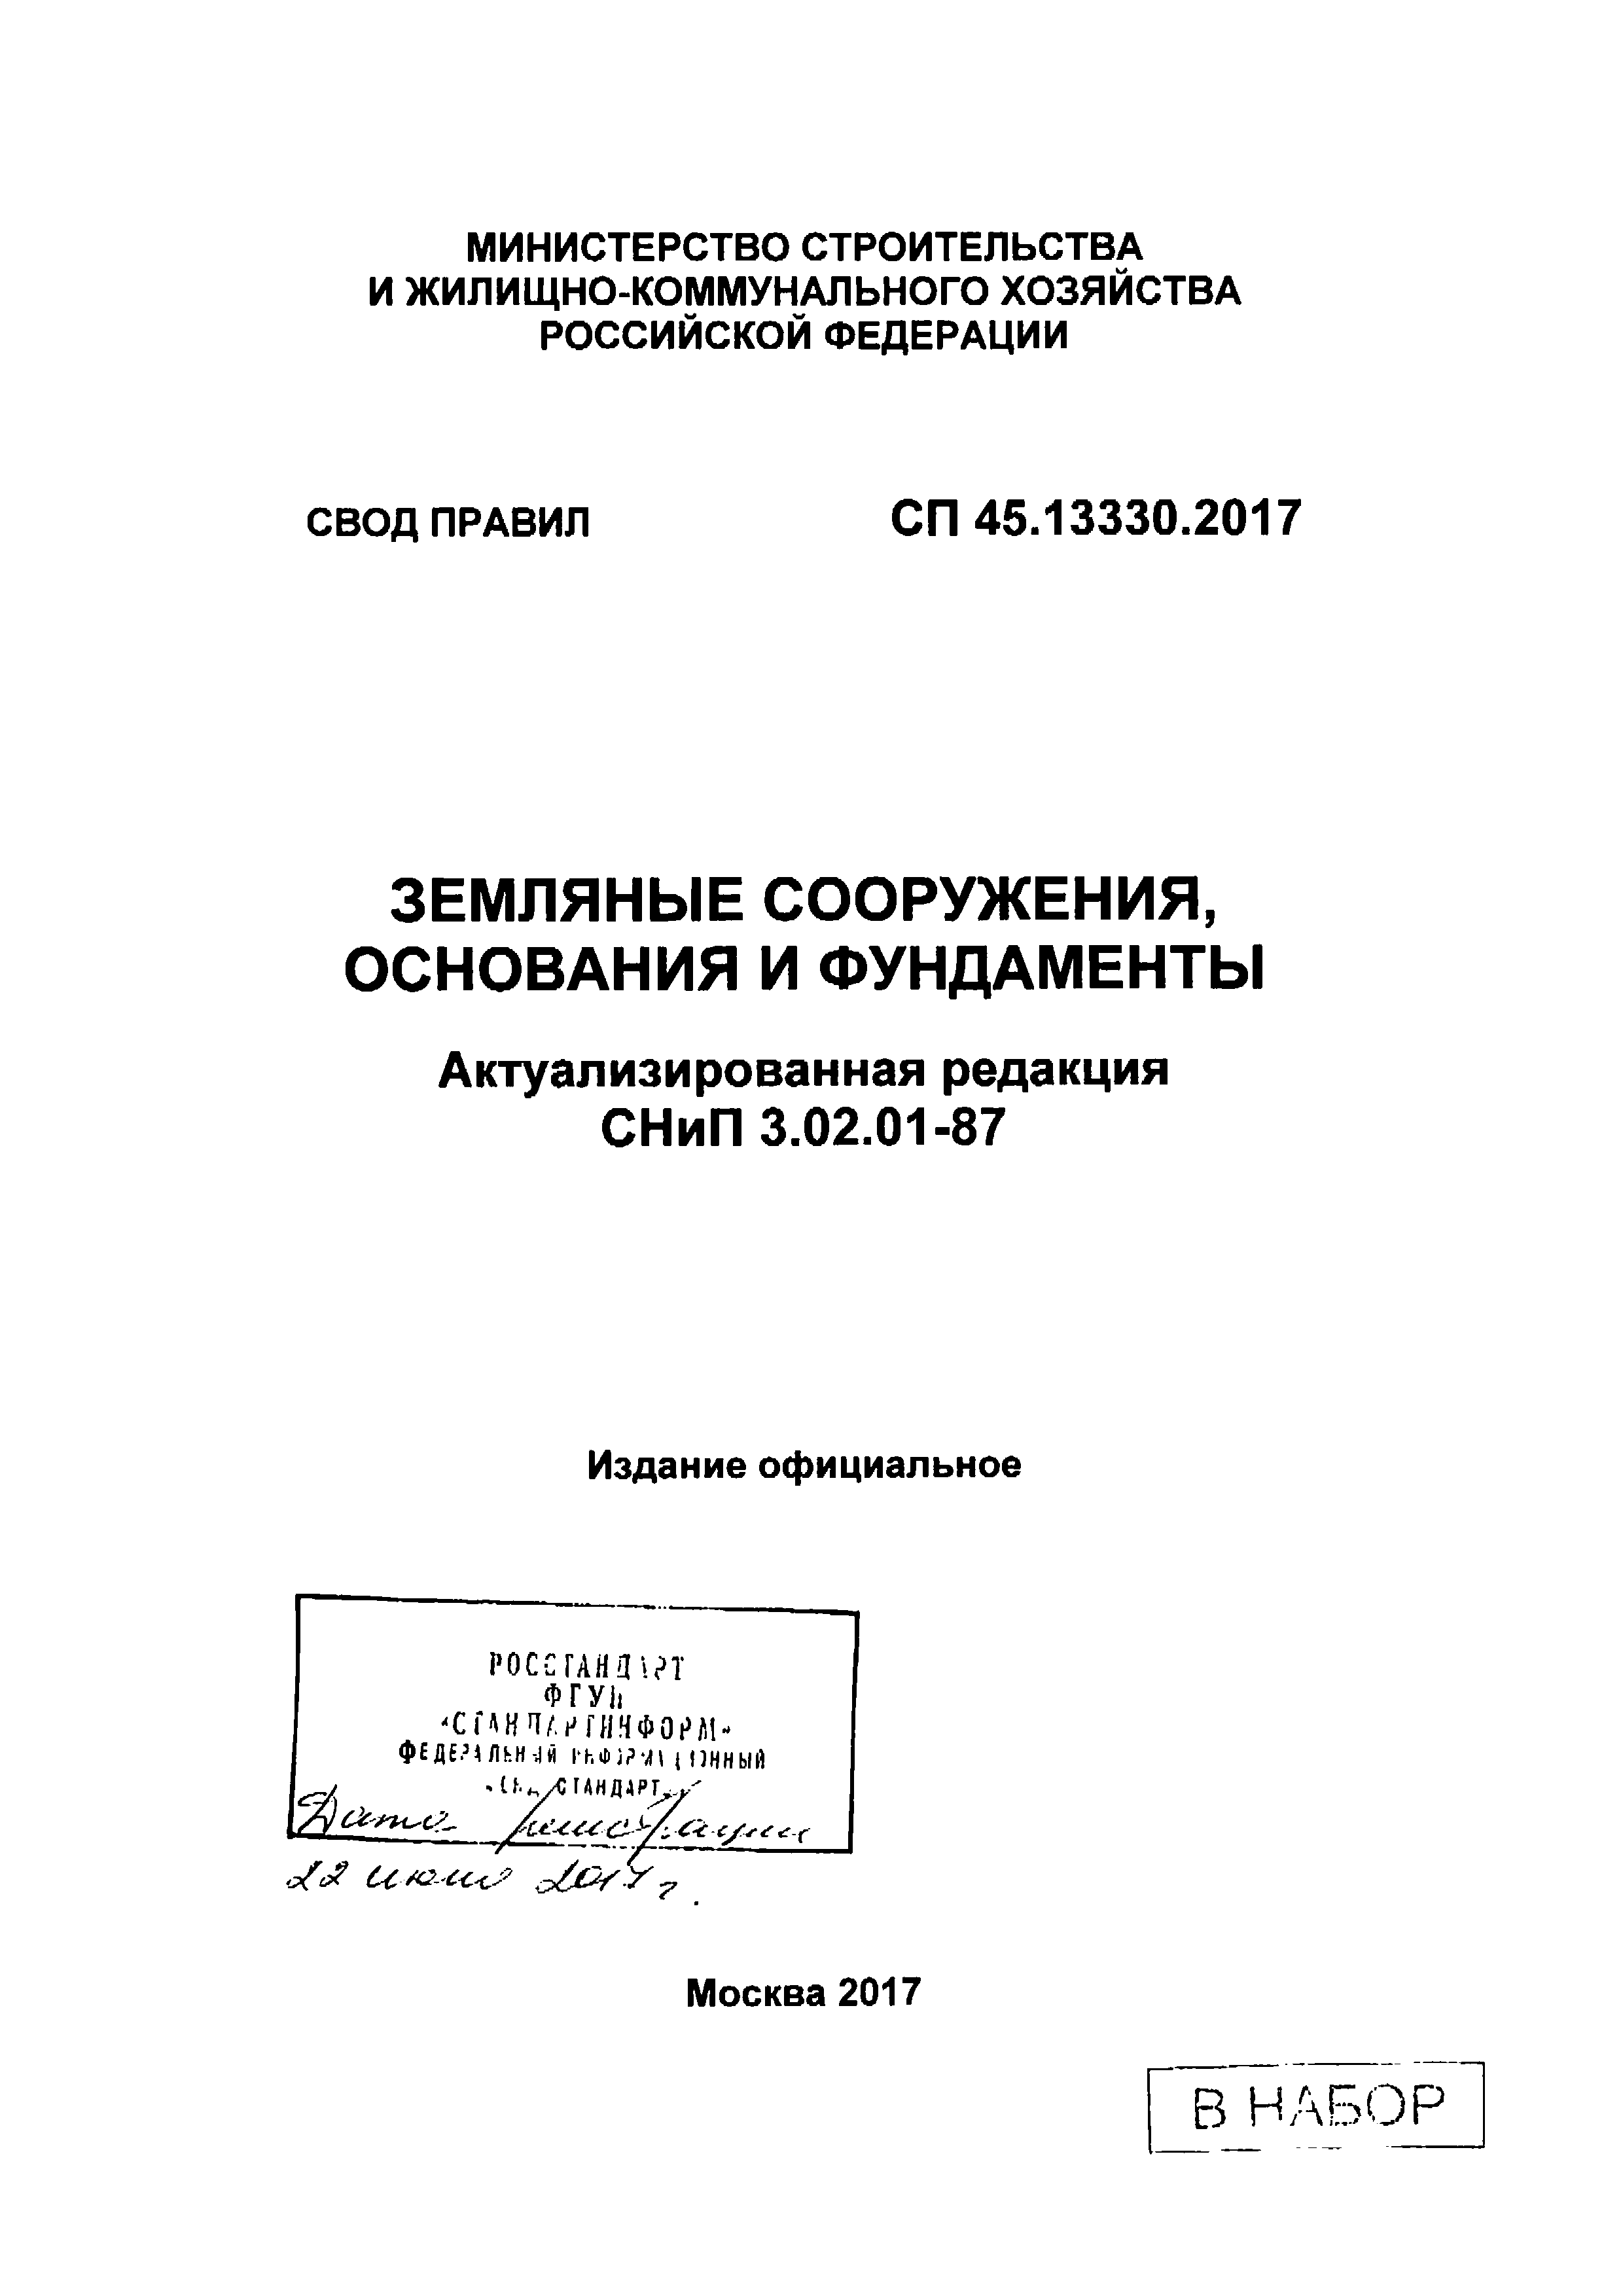 СП 45.13330.2017